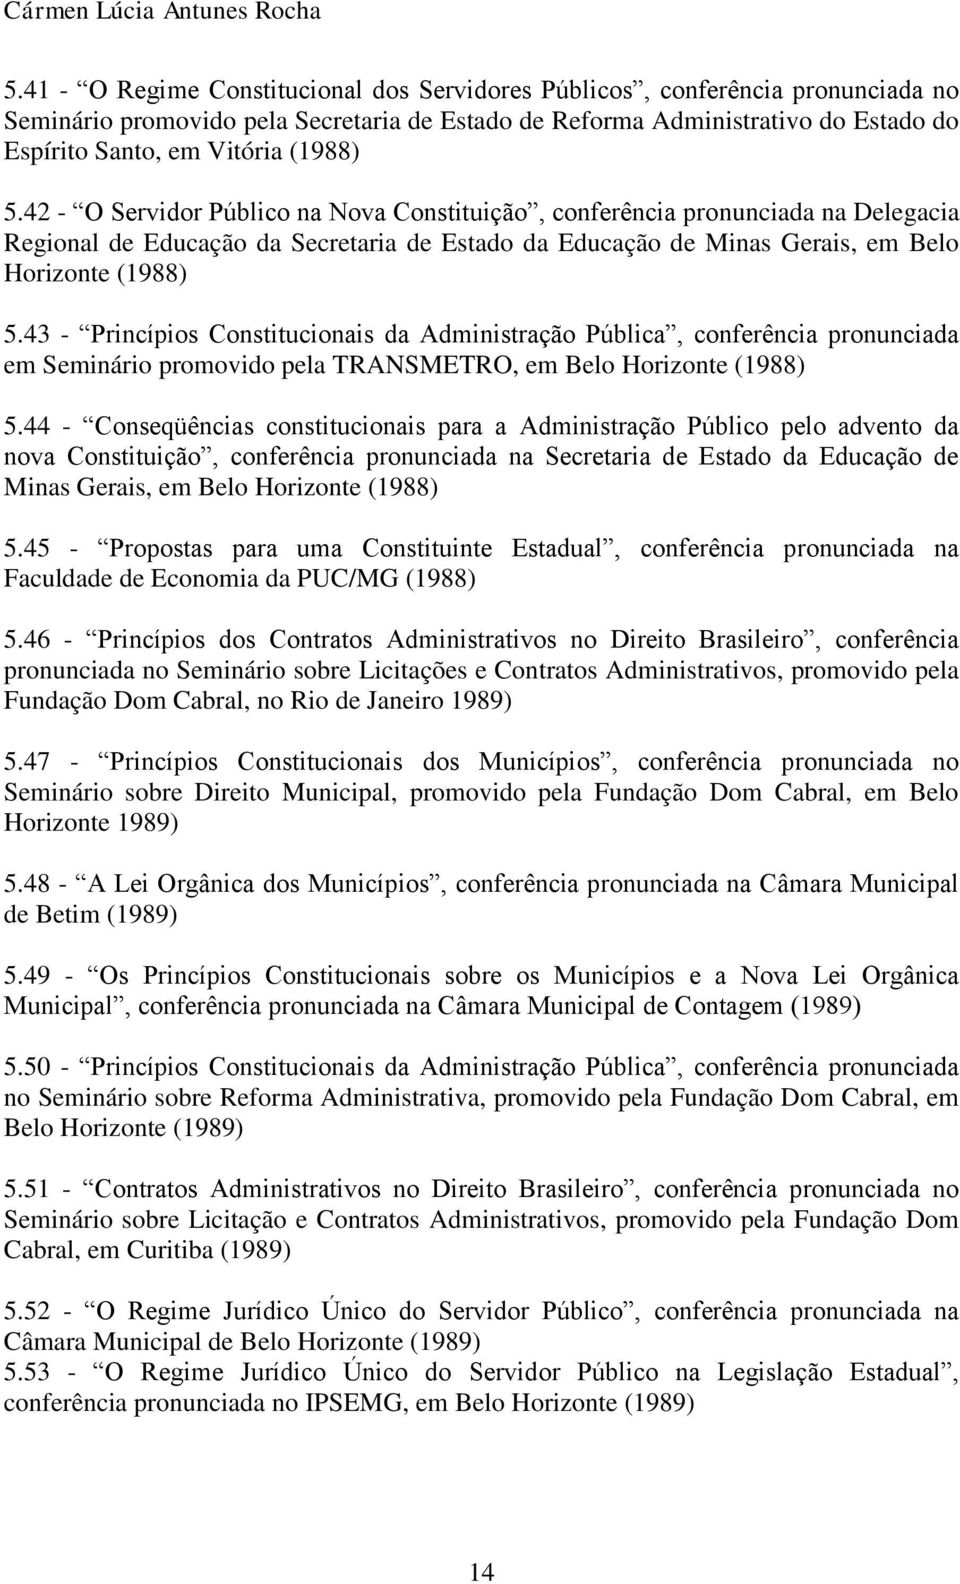 43 - Princípios Constitucionais da Administração Pública, conferência pronunciada em Seminário promovido pela TRANSMETRO, em Belo Horizonte (1988) 5.